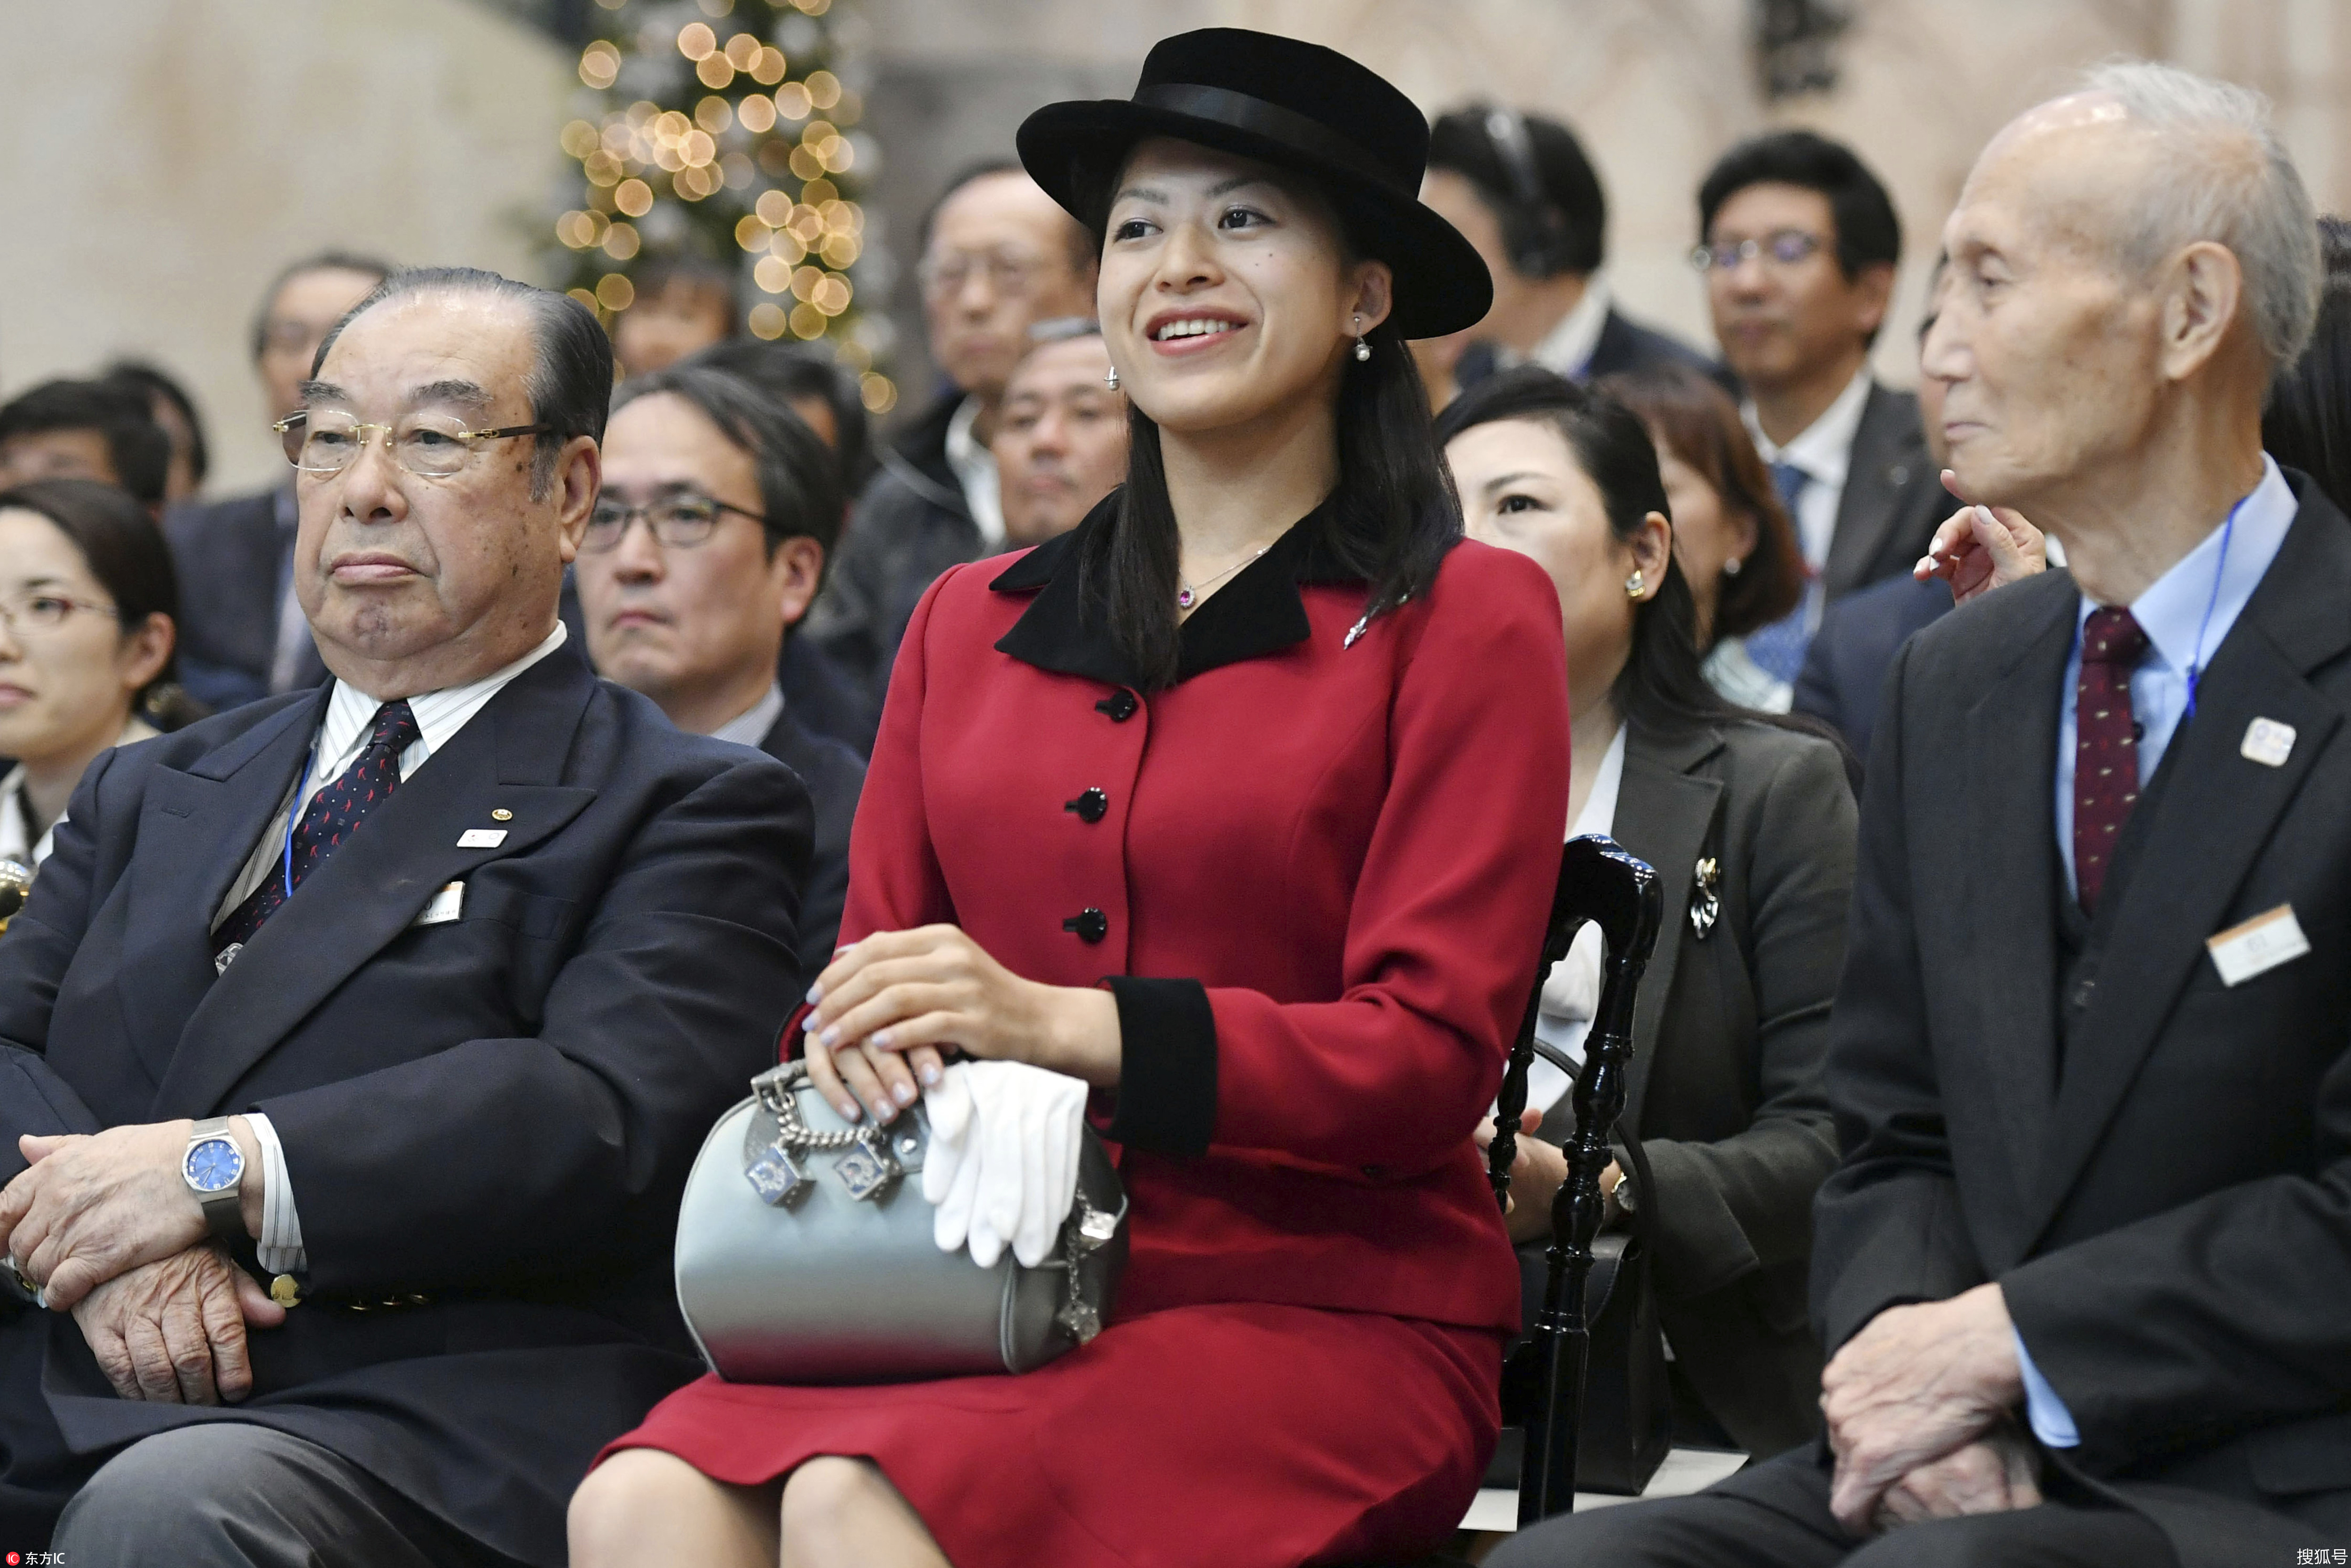 日本承子女王观战壁球比赛脸上两颗美人痣亮眼